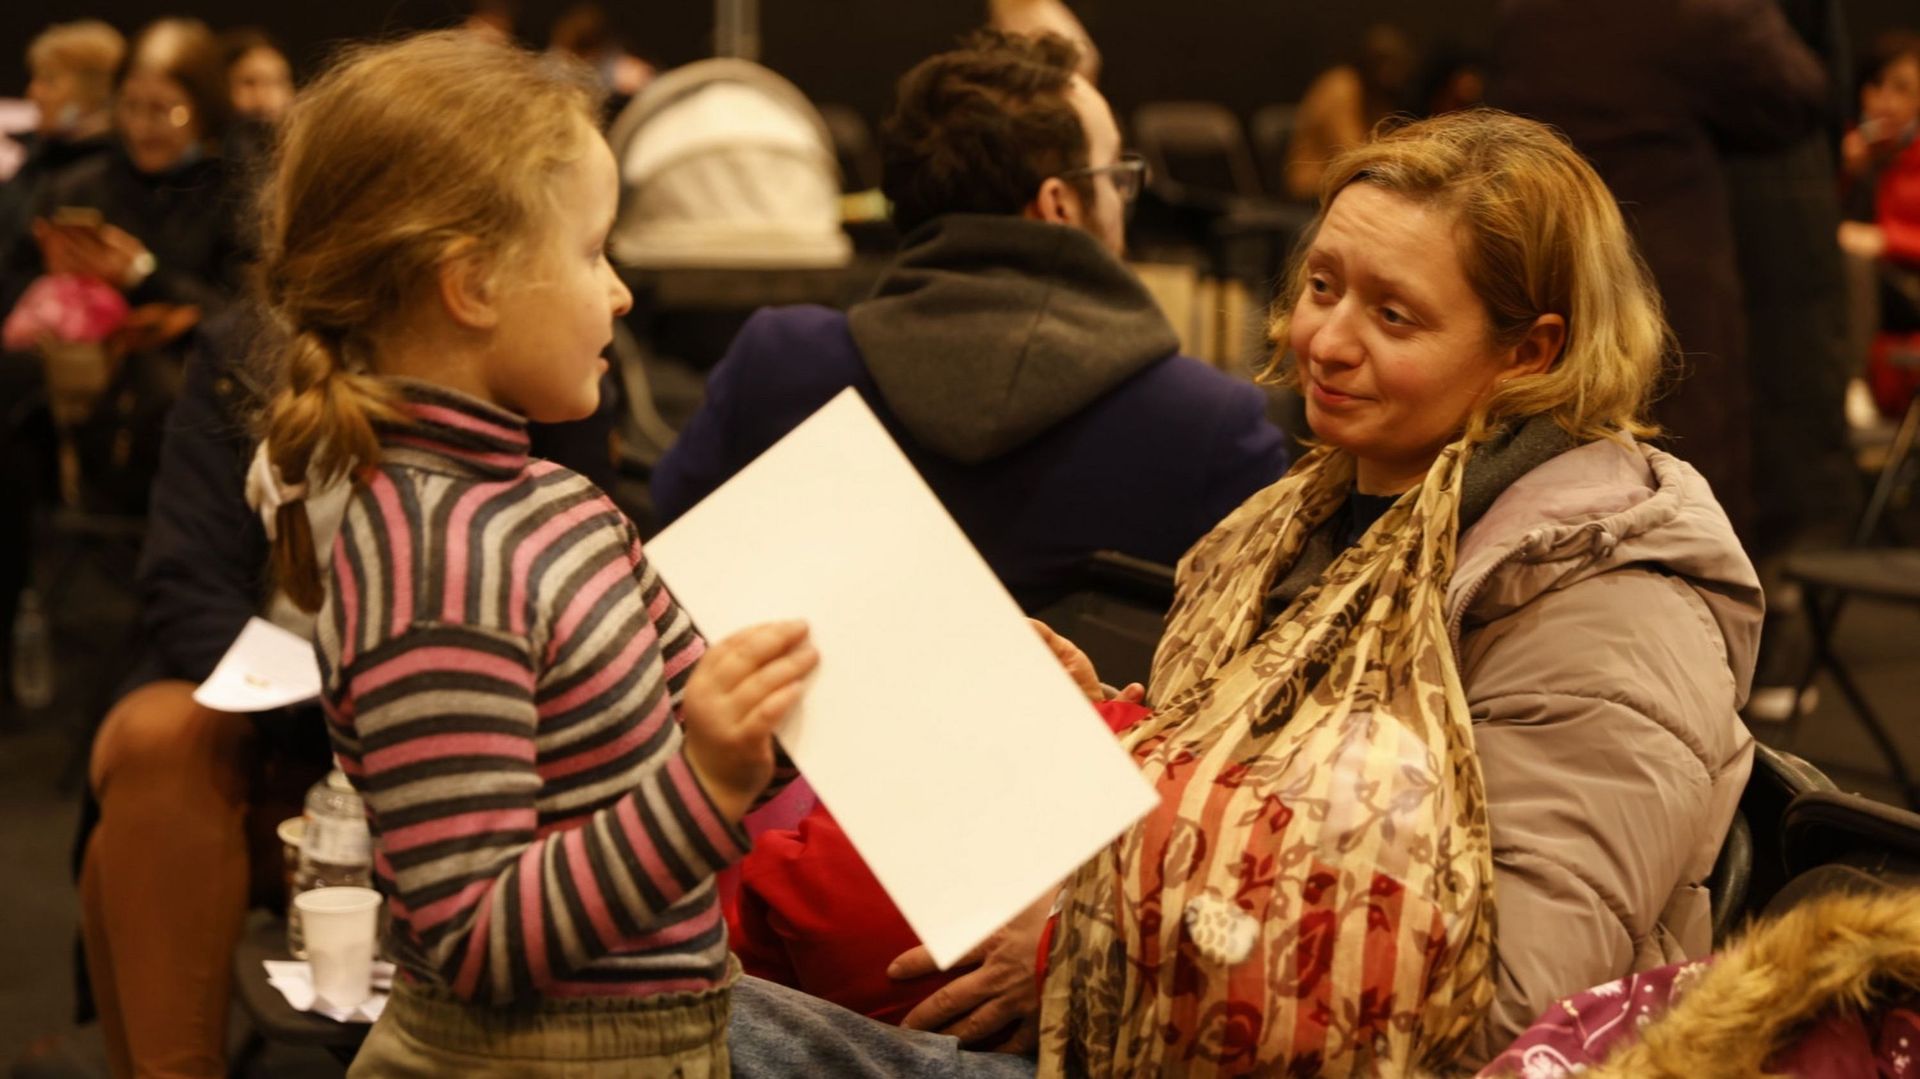 Des réfugiés ukrainiens complètent leur enregistrement lors de l'ouverture d'un centre pour réfugiés dans le hall du Palais 8 de Brussels expo, lundi 14 mars 2022.